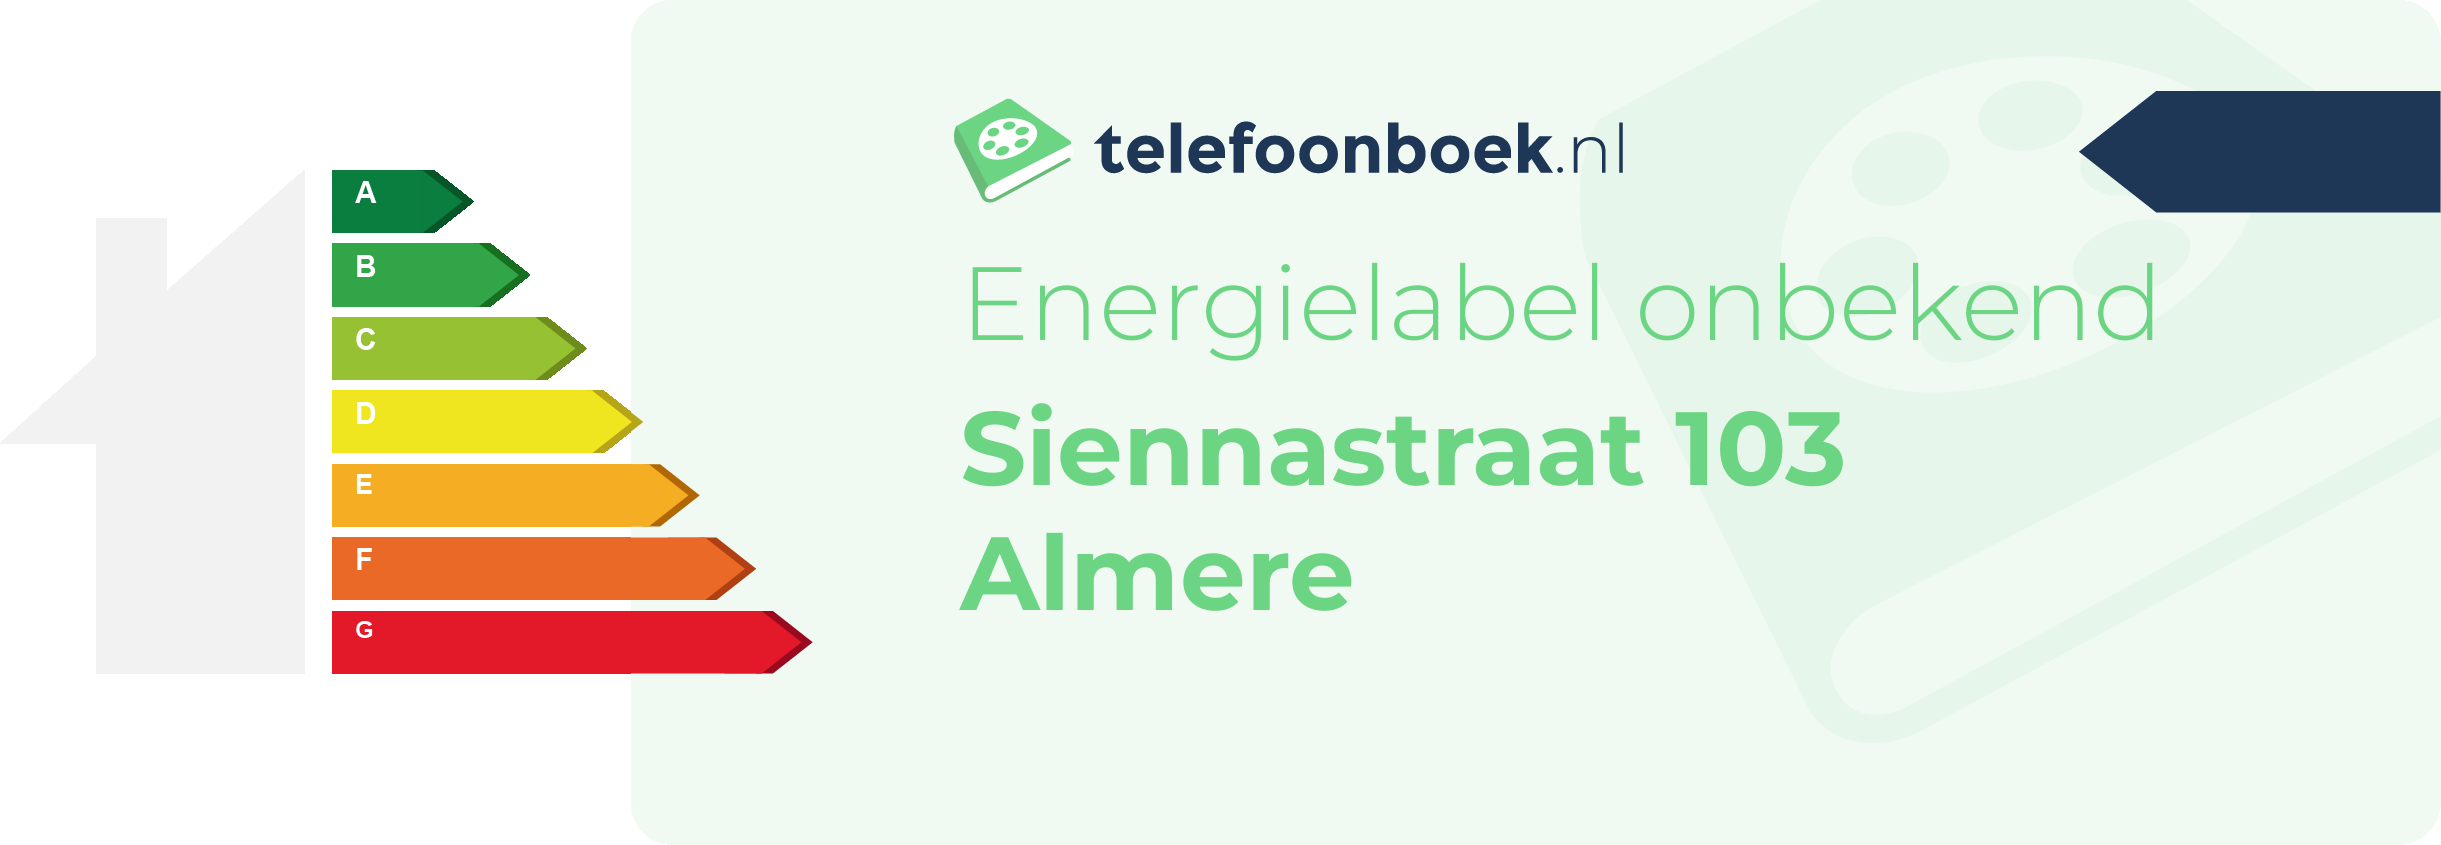 Energielabel Siennastraat 103 Almere